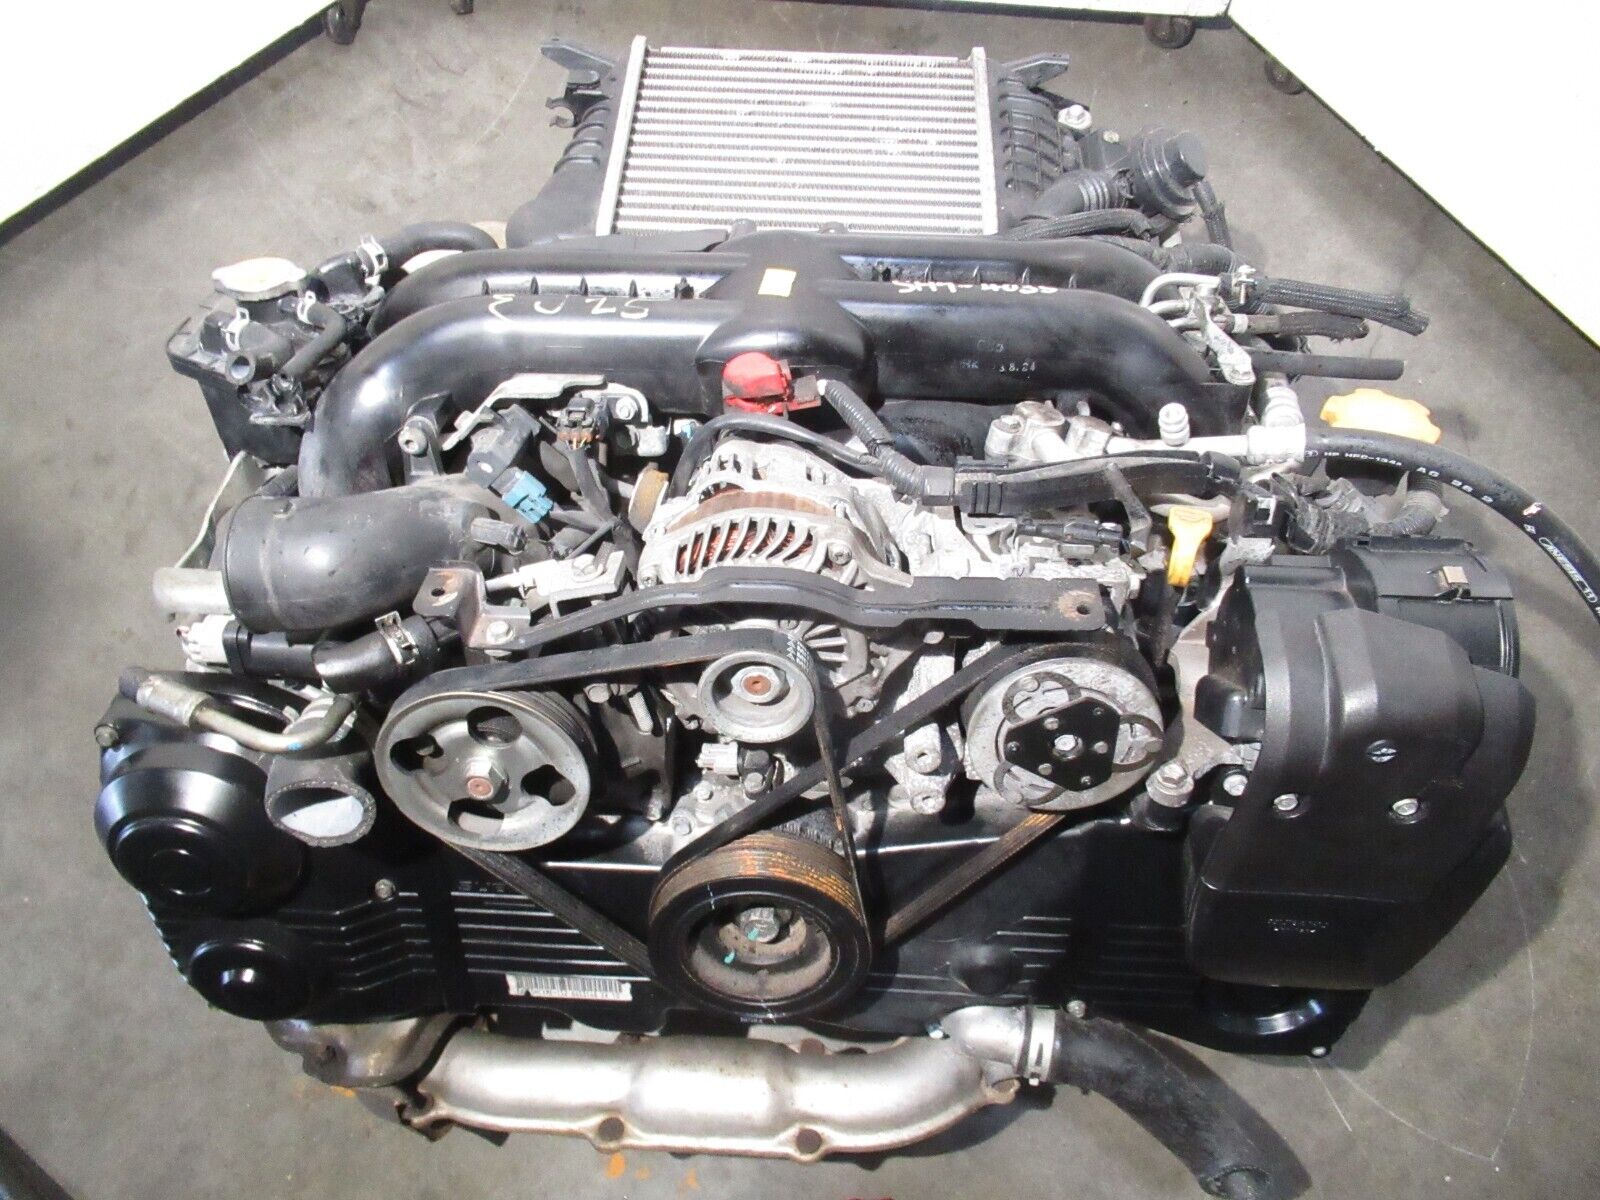 JDM 2008-2014 Subaru Impreza WRX Engine 4-cyl 2.5L Turbo JDM EJ255 Motor